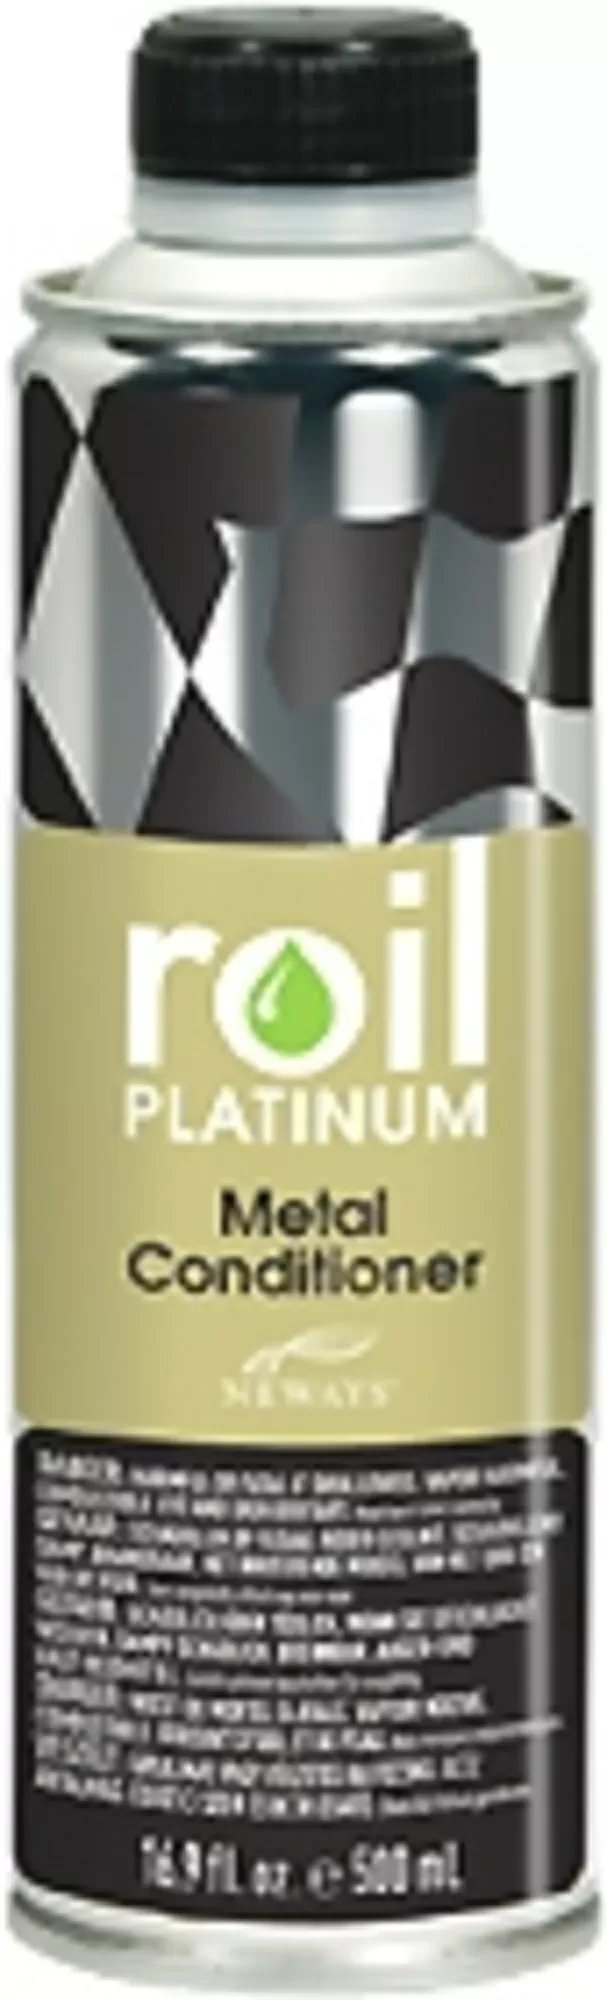 Roil Platinum Metal Conditioner 